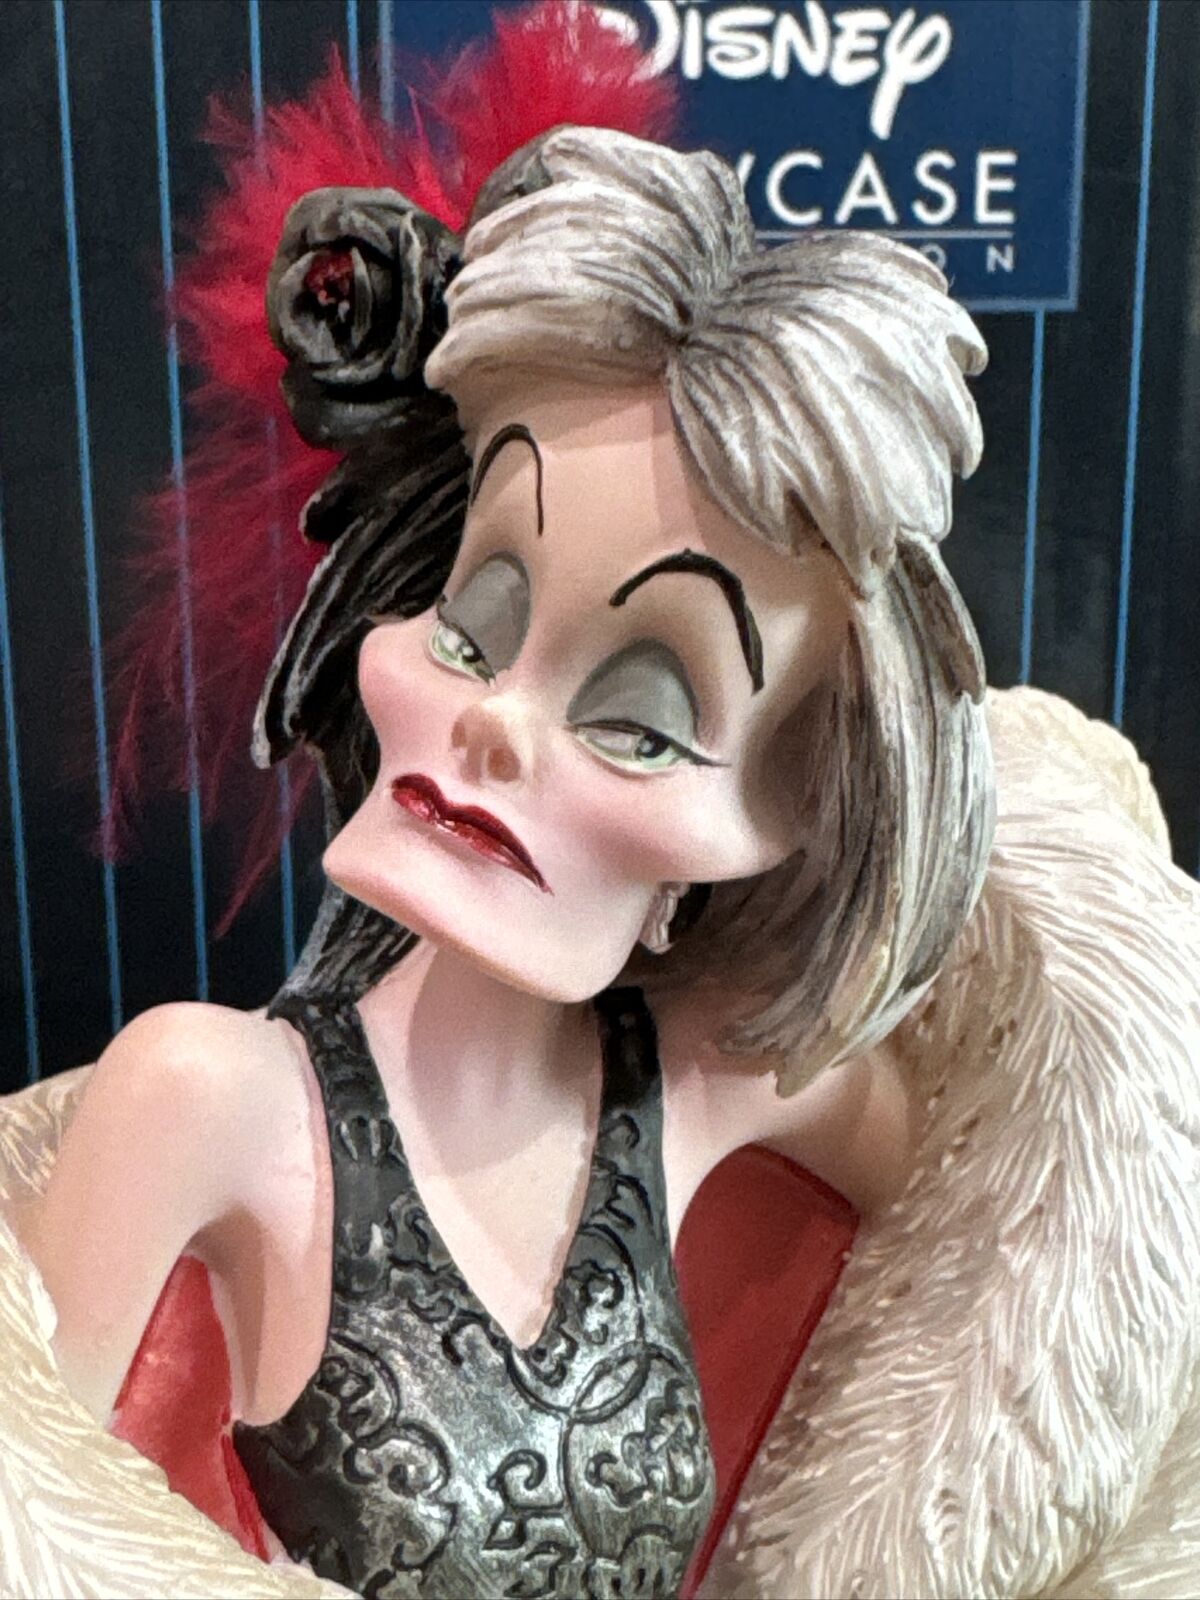 Disney Showcase Couture de Force Cruella de Ville Enesco Statue 4031541 Retired